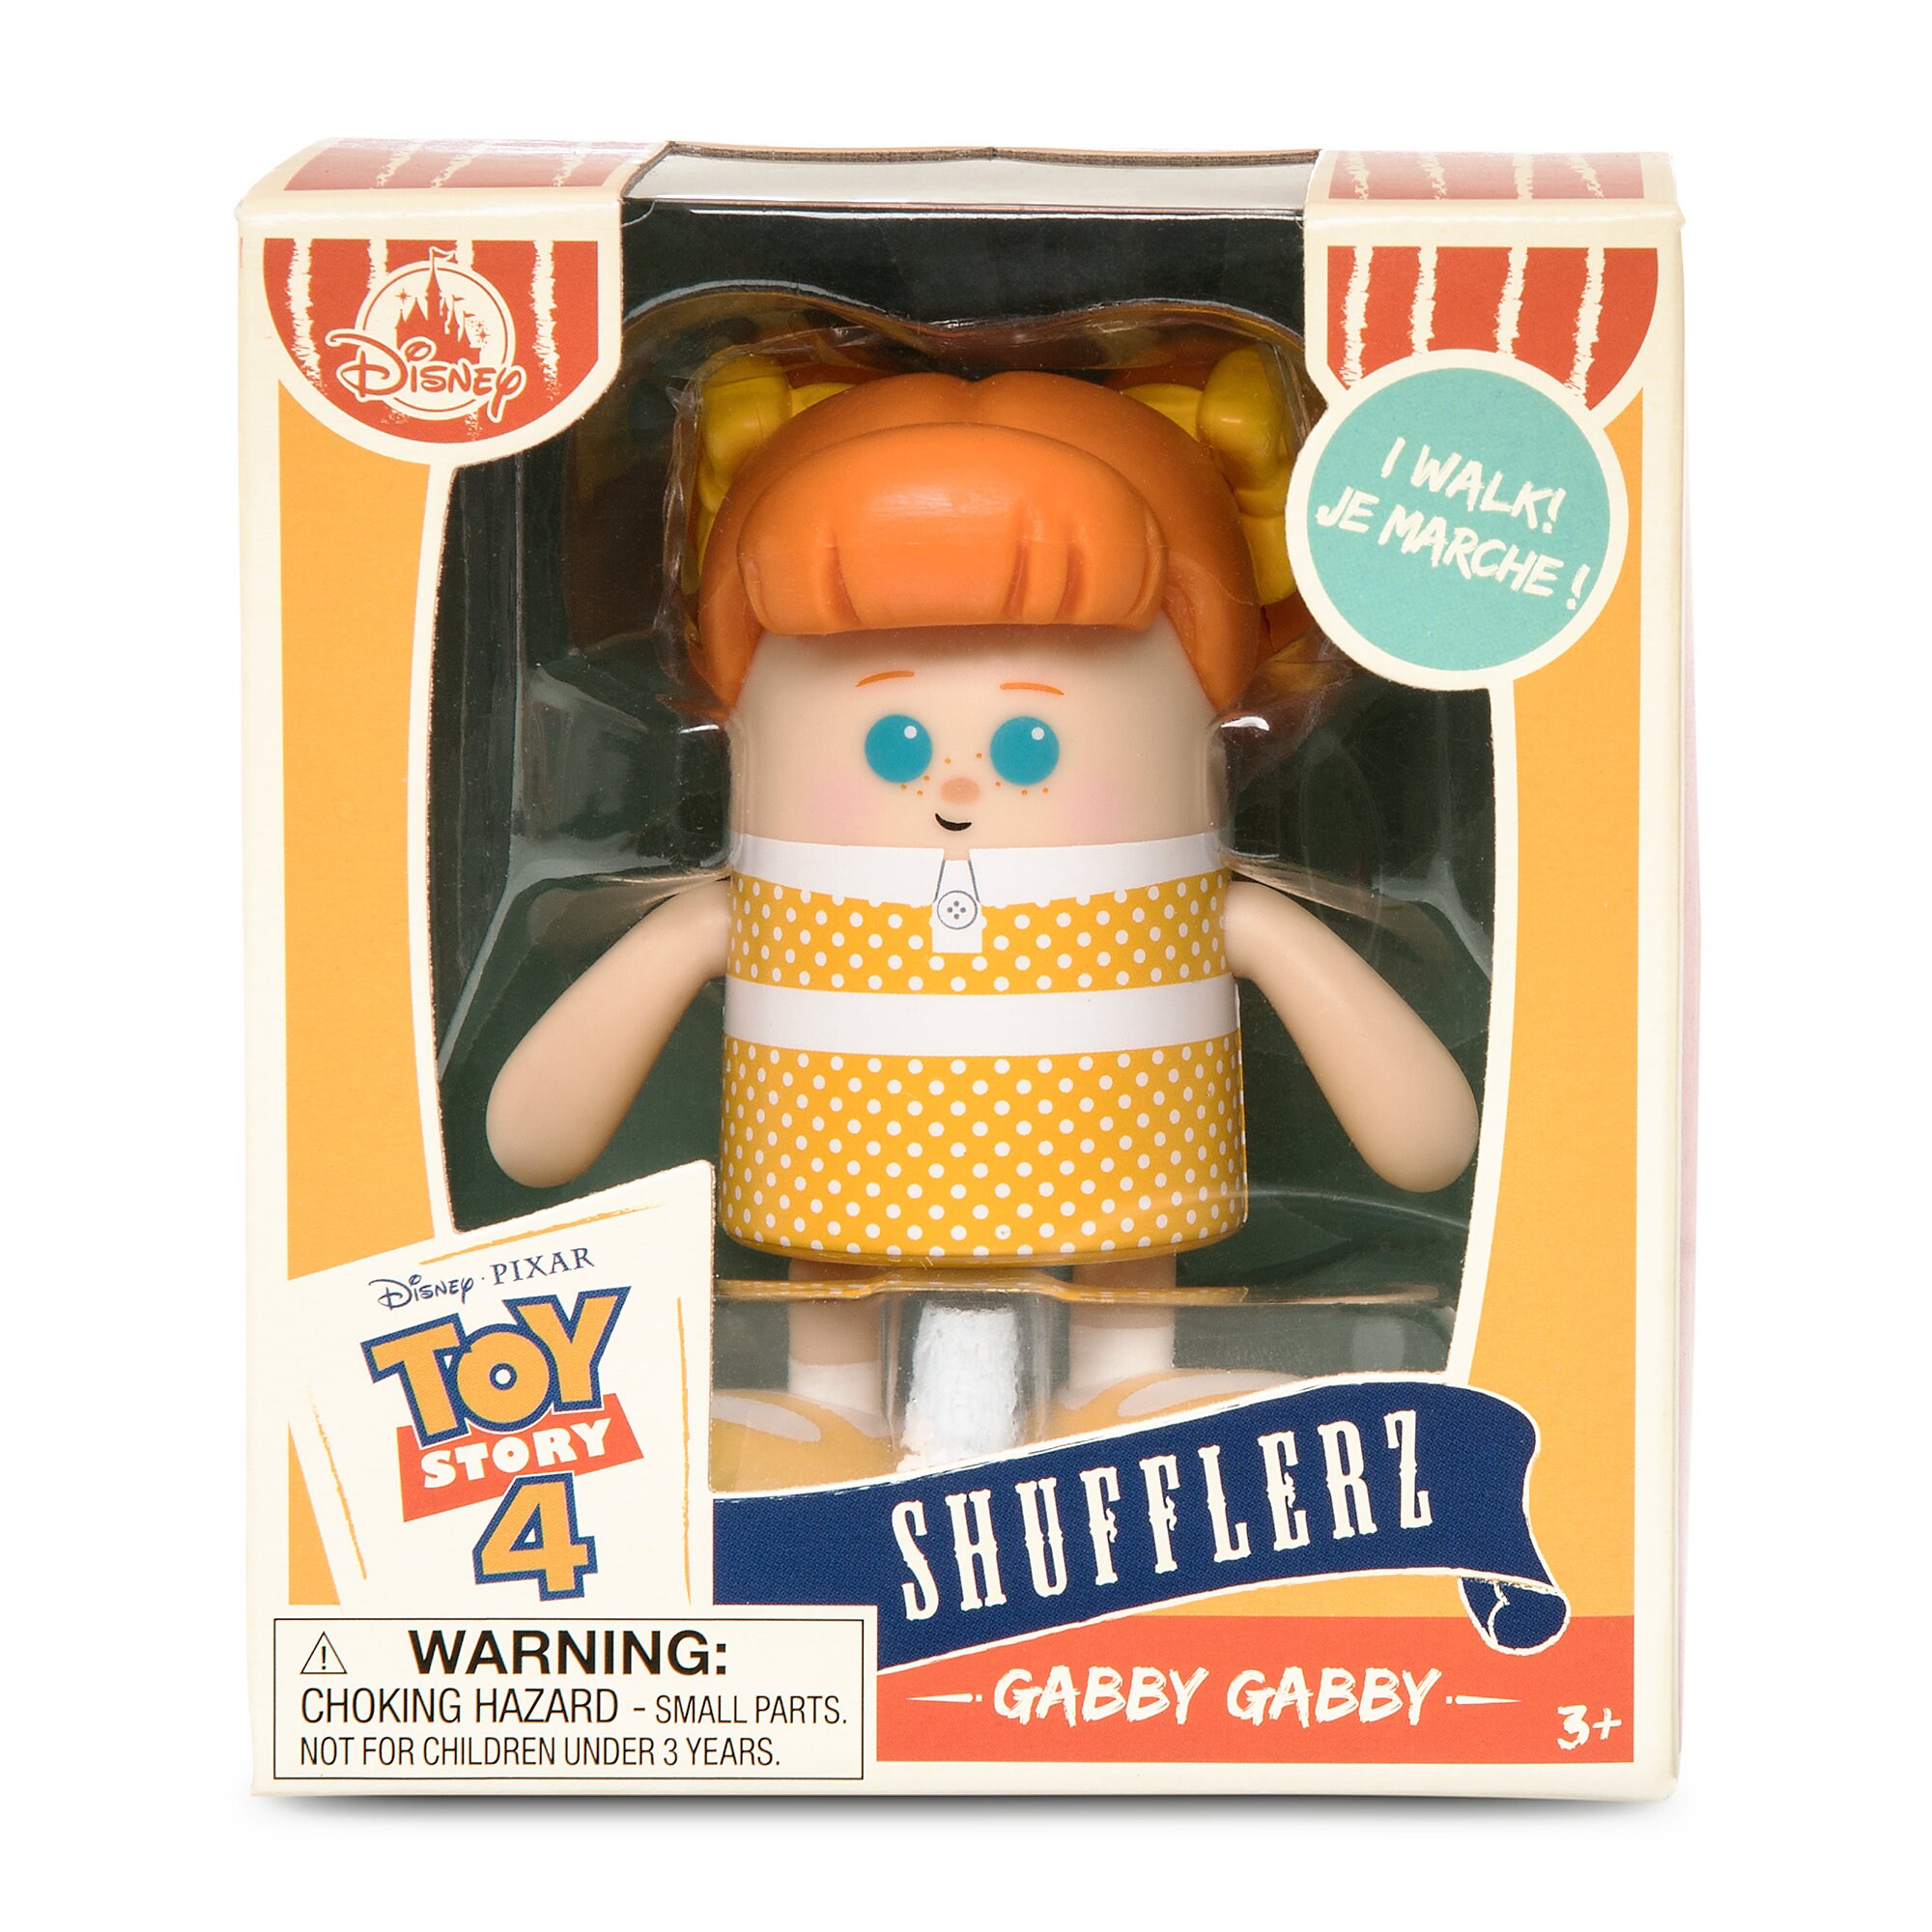 Gabby Gabby Shufflerz Walking Figure - Toy Story 4